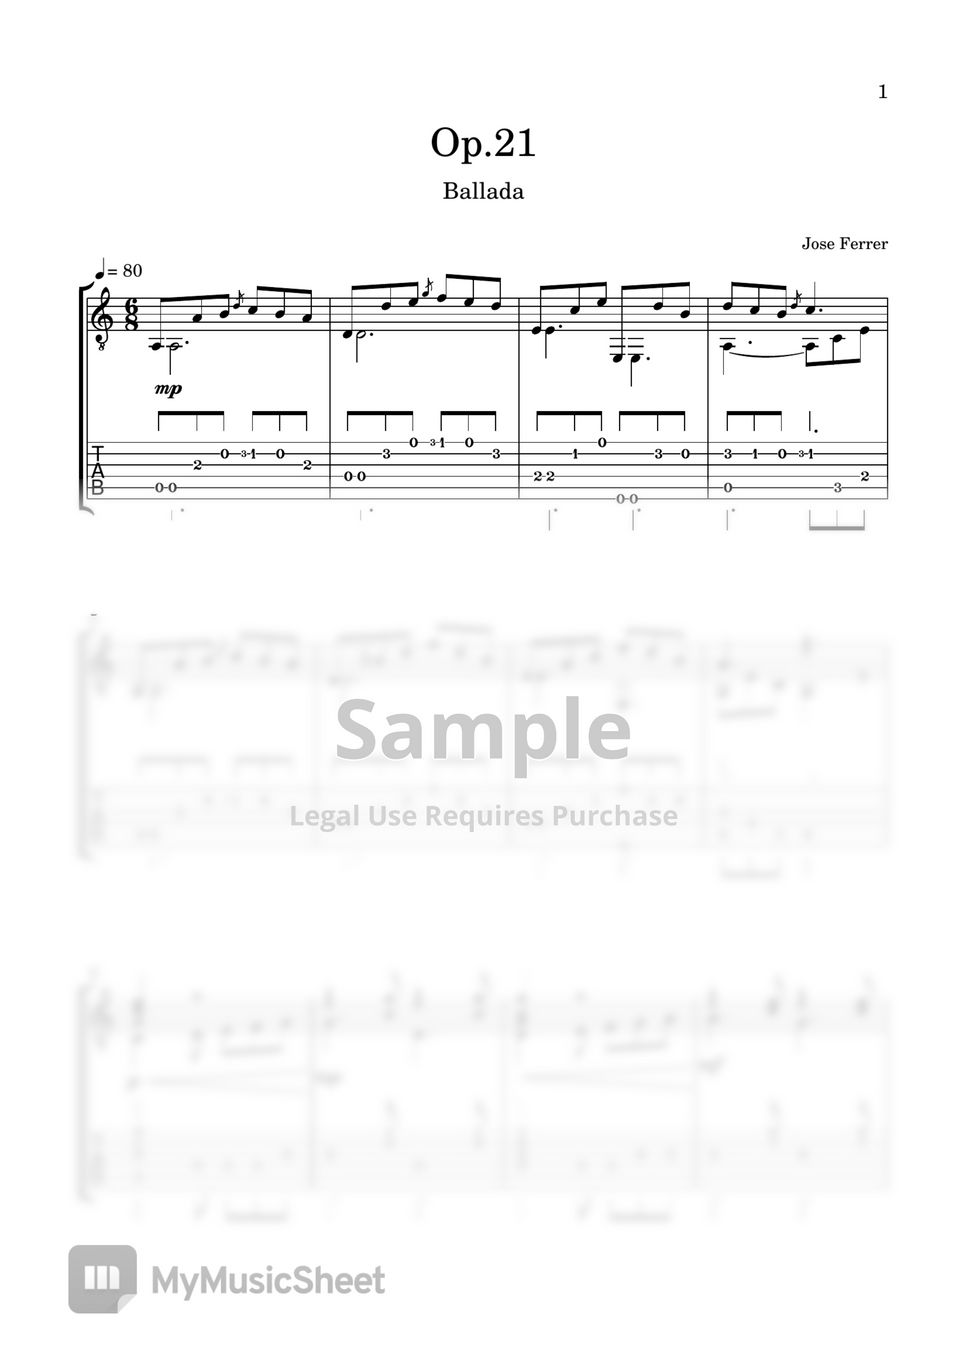 Jose Ferrer - Op.21 (Ballada) by LemonTree